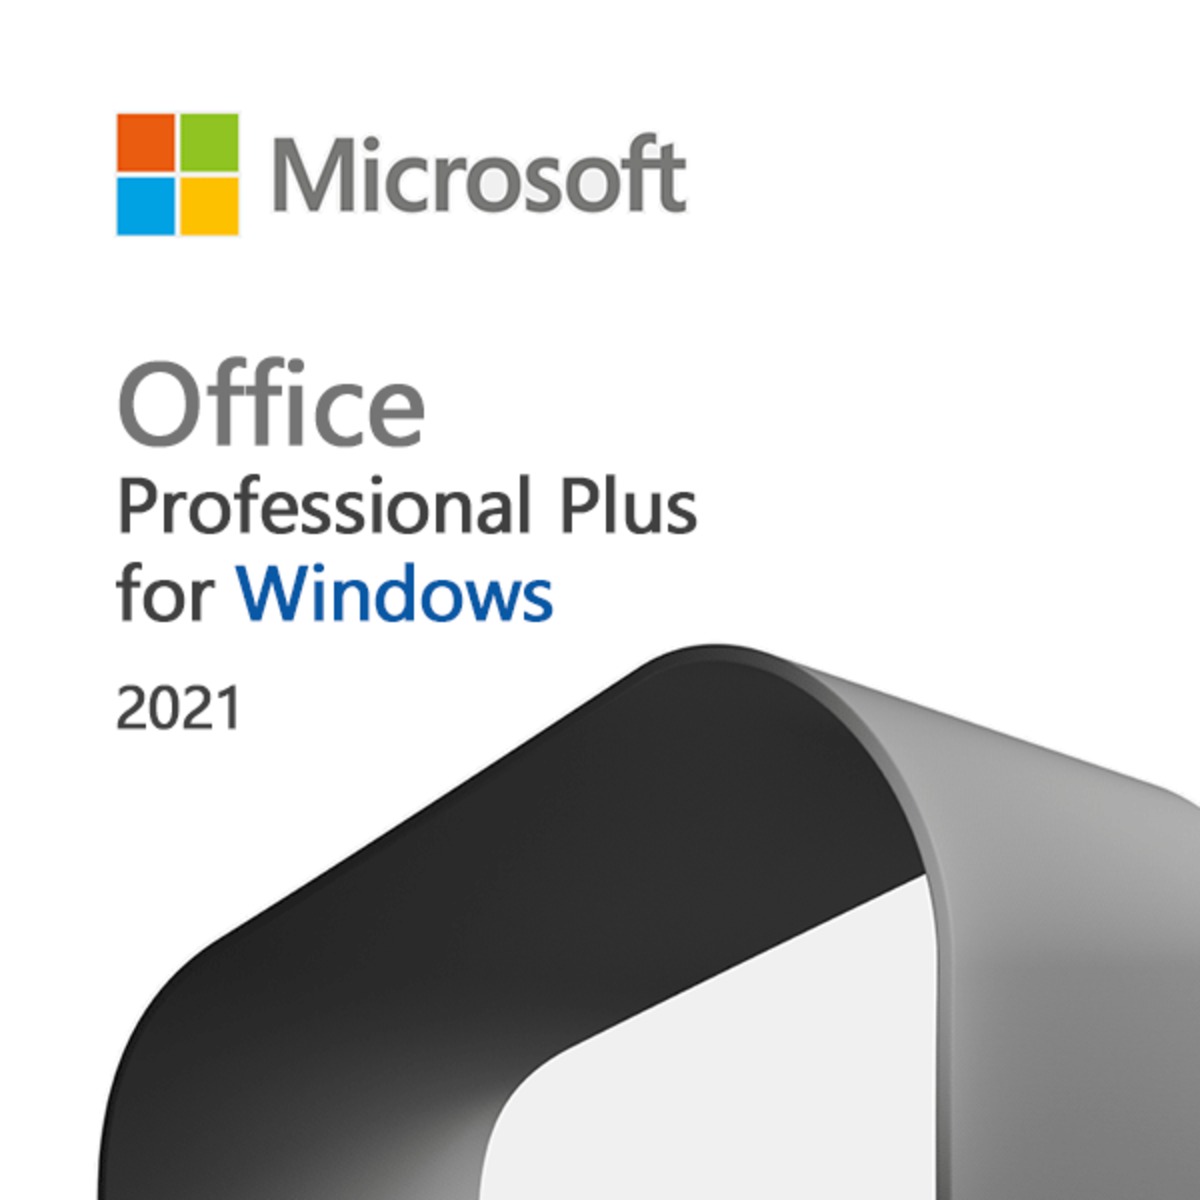 Microsoft Office Pro Plus 2021 ダウンロード版|プロダクトキー ...